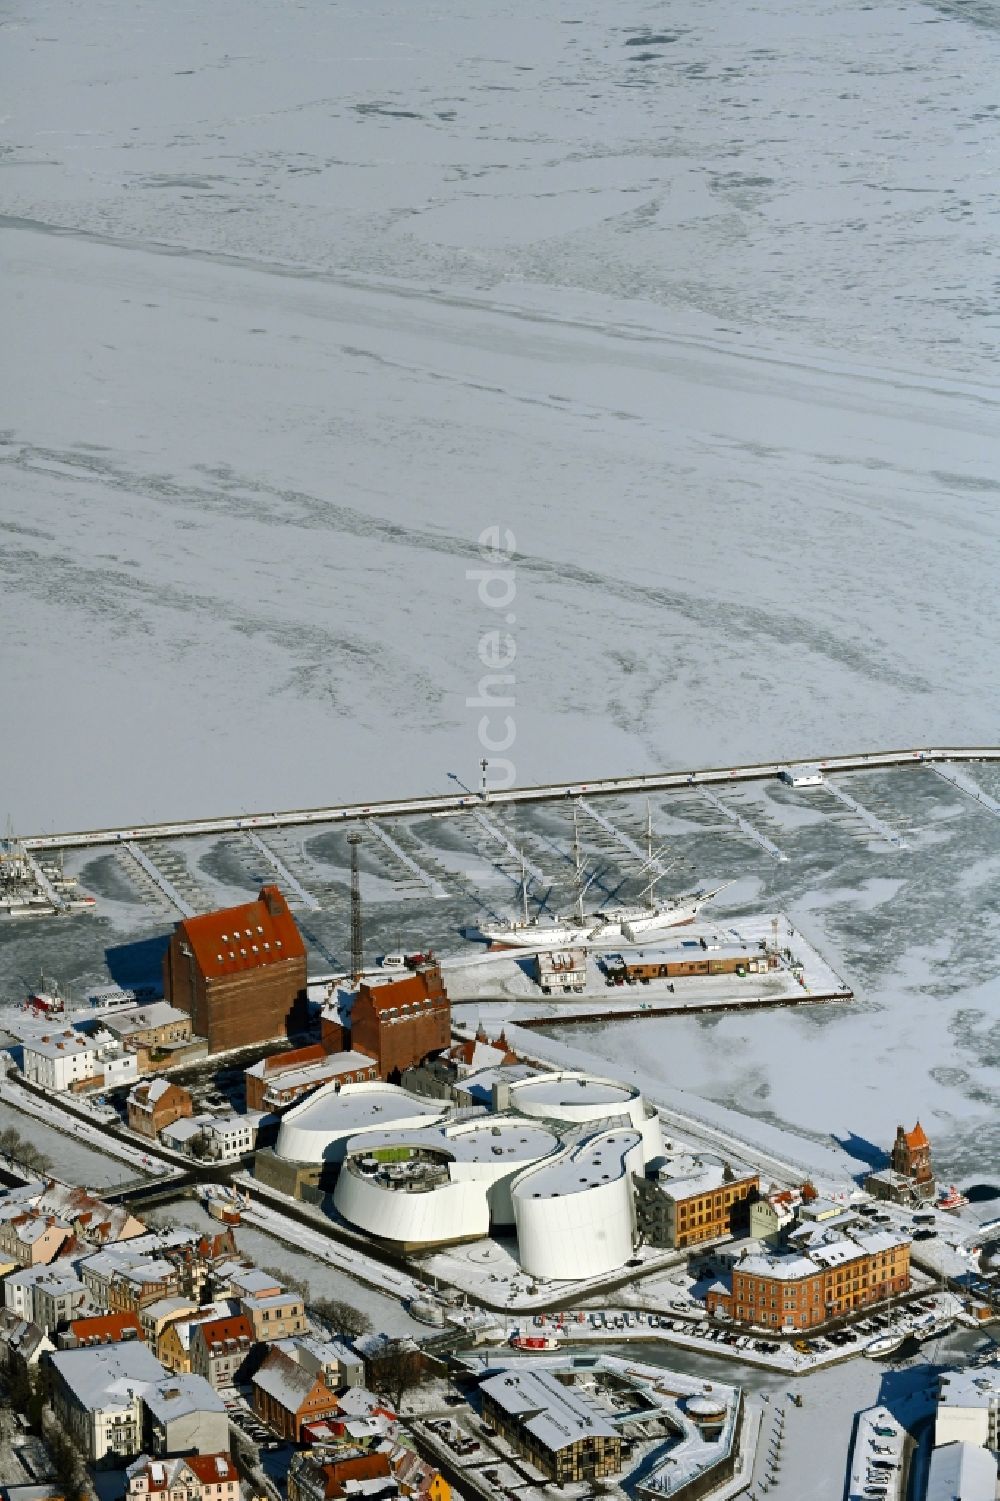 Luftbild Stralsund - Winterluftbild Hafeninsel mit dem Ozeaneum Meereskunde- Museum in der Hansestadt Stralsund in Mecklenburg - Vorpommern